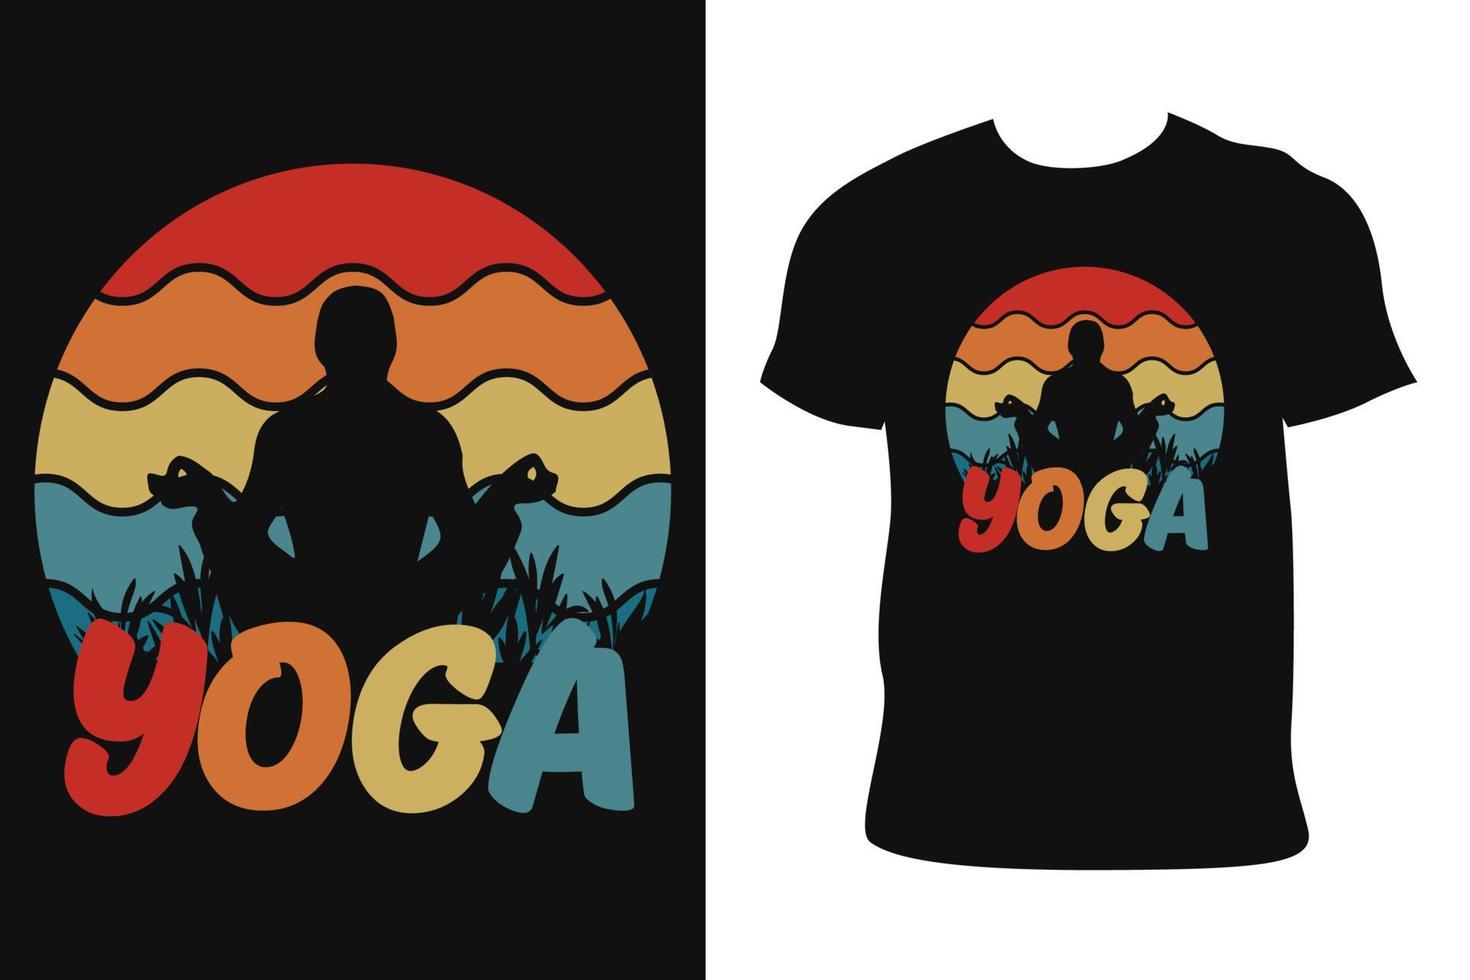 design de camiseta vintage de ioga. camiseta vintage de ioga. vetor livre de camiseta vintage de ioga.